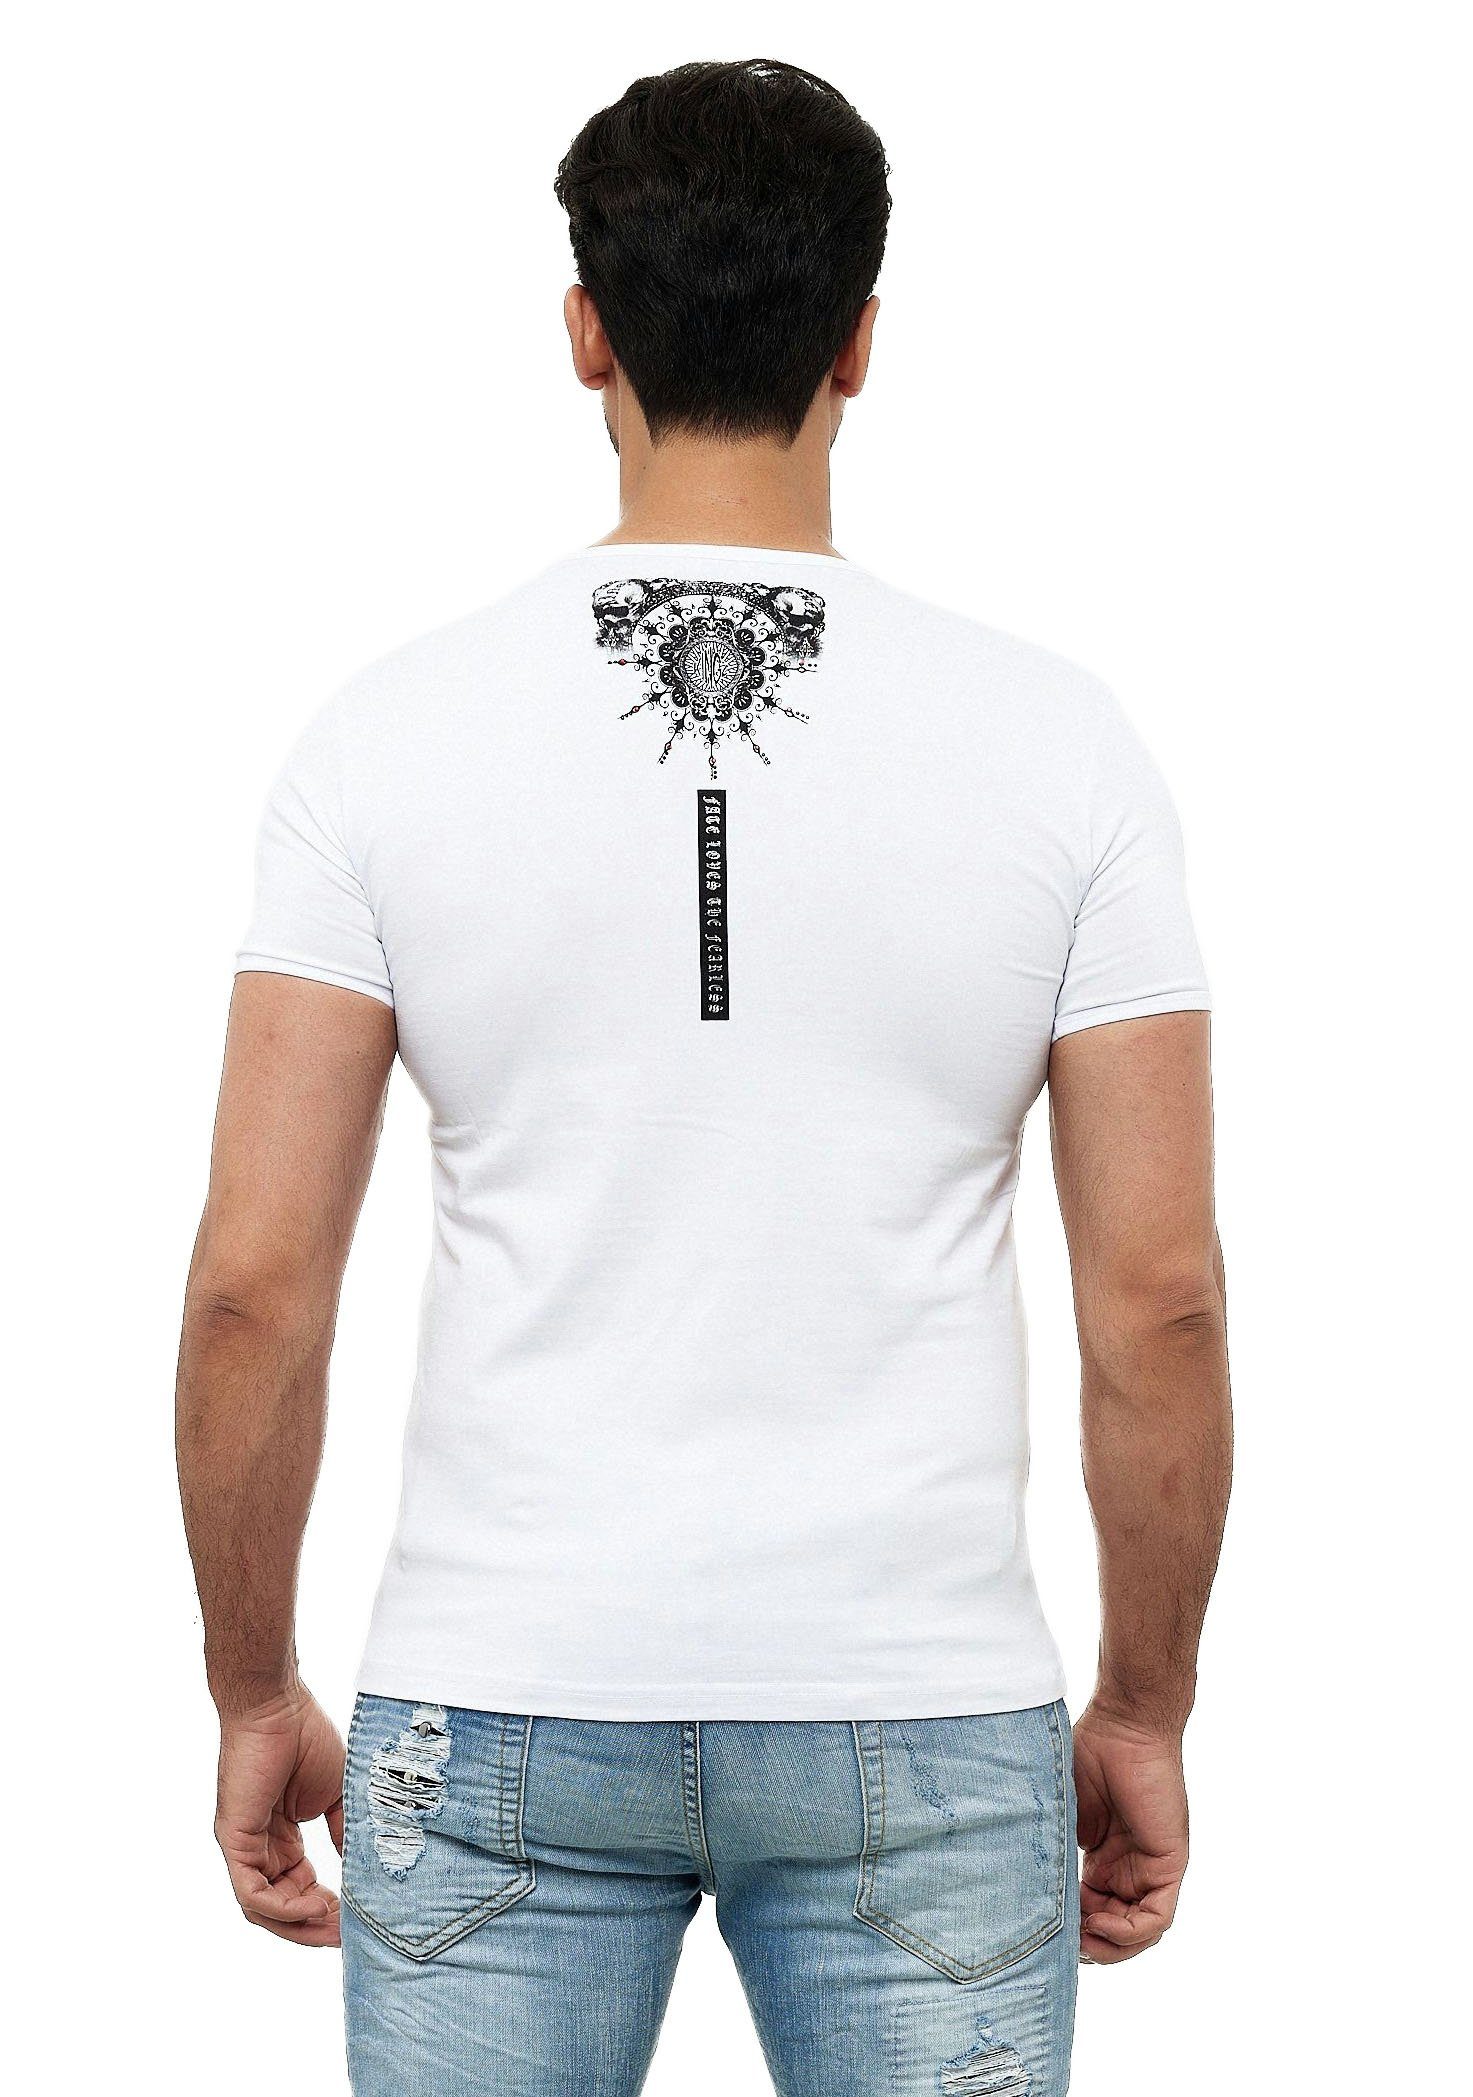 T-Shirt mit ausgefallenem KINGZ weiß-silberfarben Design